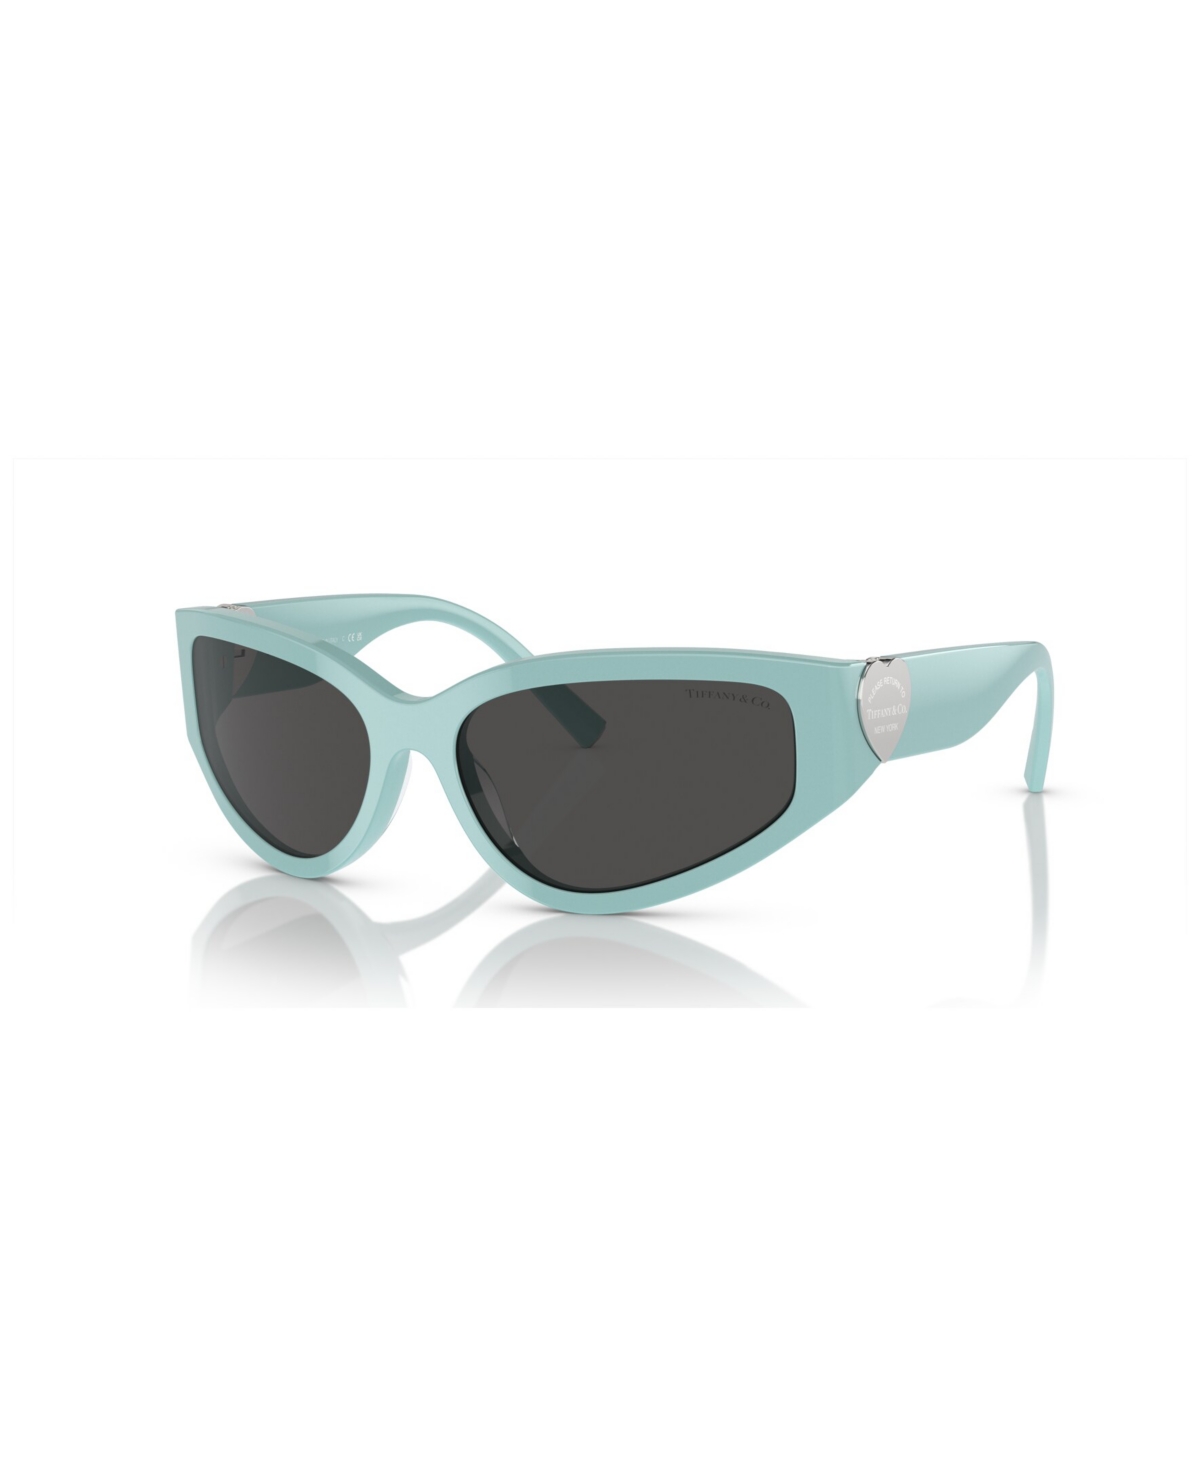 Tiffany & Co Women's Sunglasses Tf4217 In Tiffany Blue